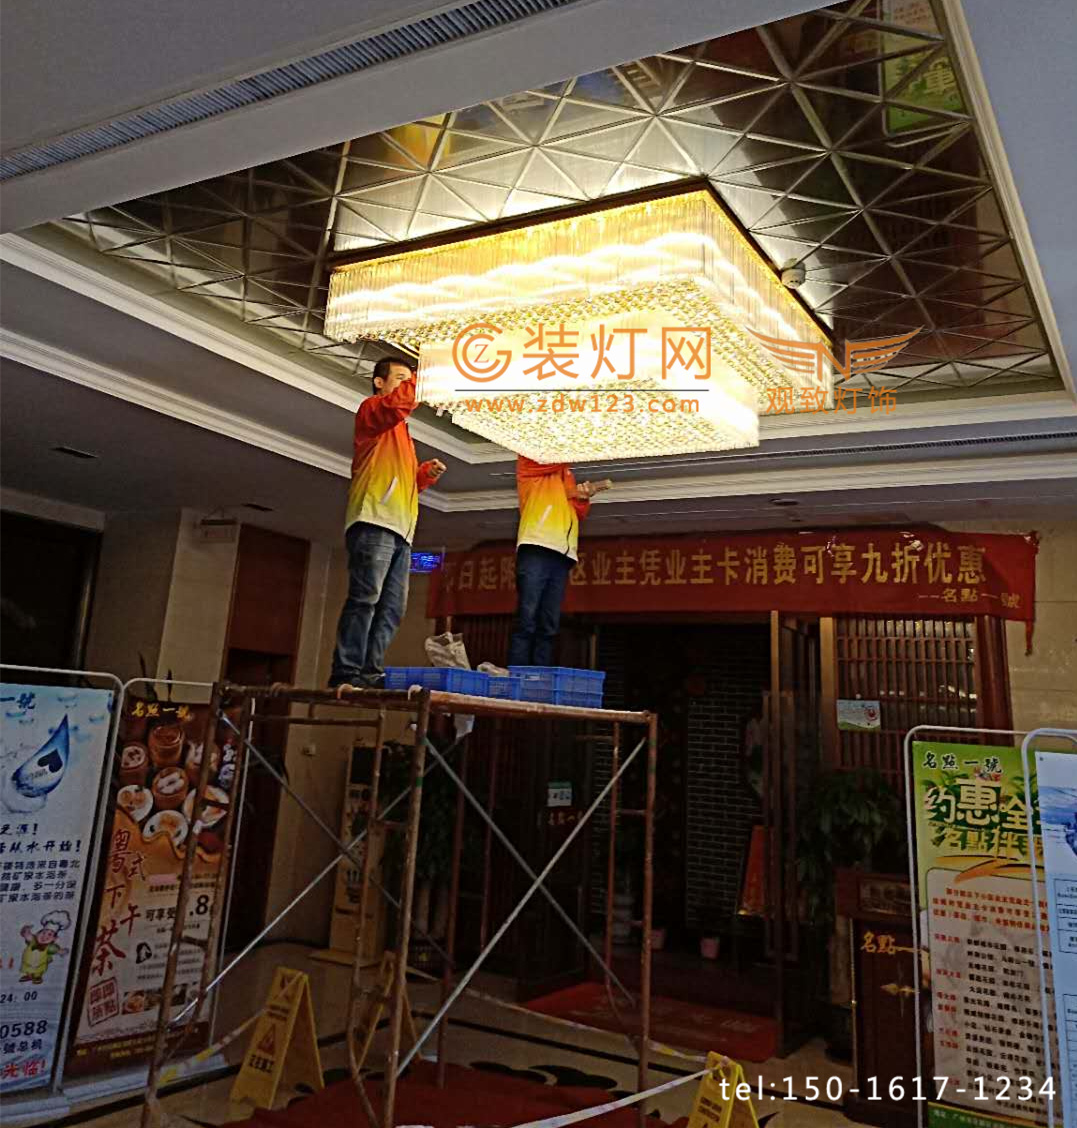 广州水晶灯清洗公司正在施工